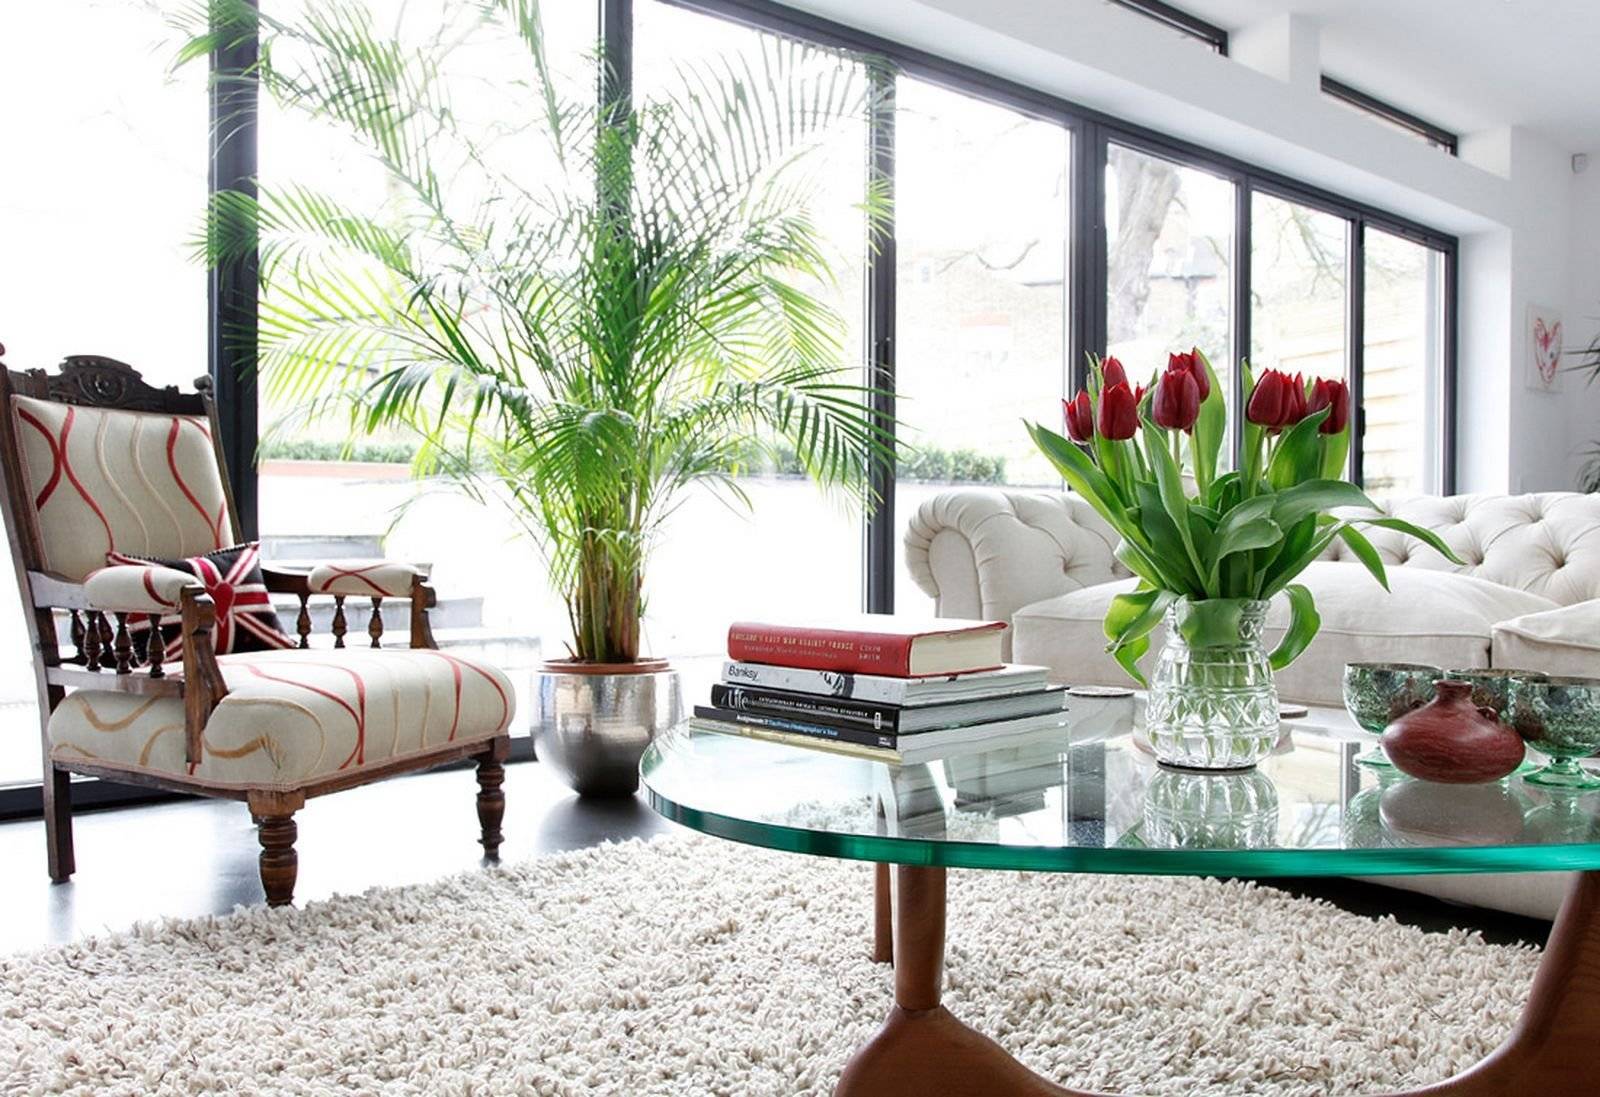 Комнатные растения в интерьере квартиры — 65 фото в стильном оформлении